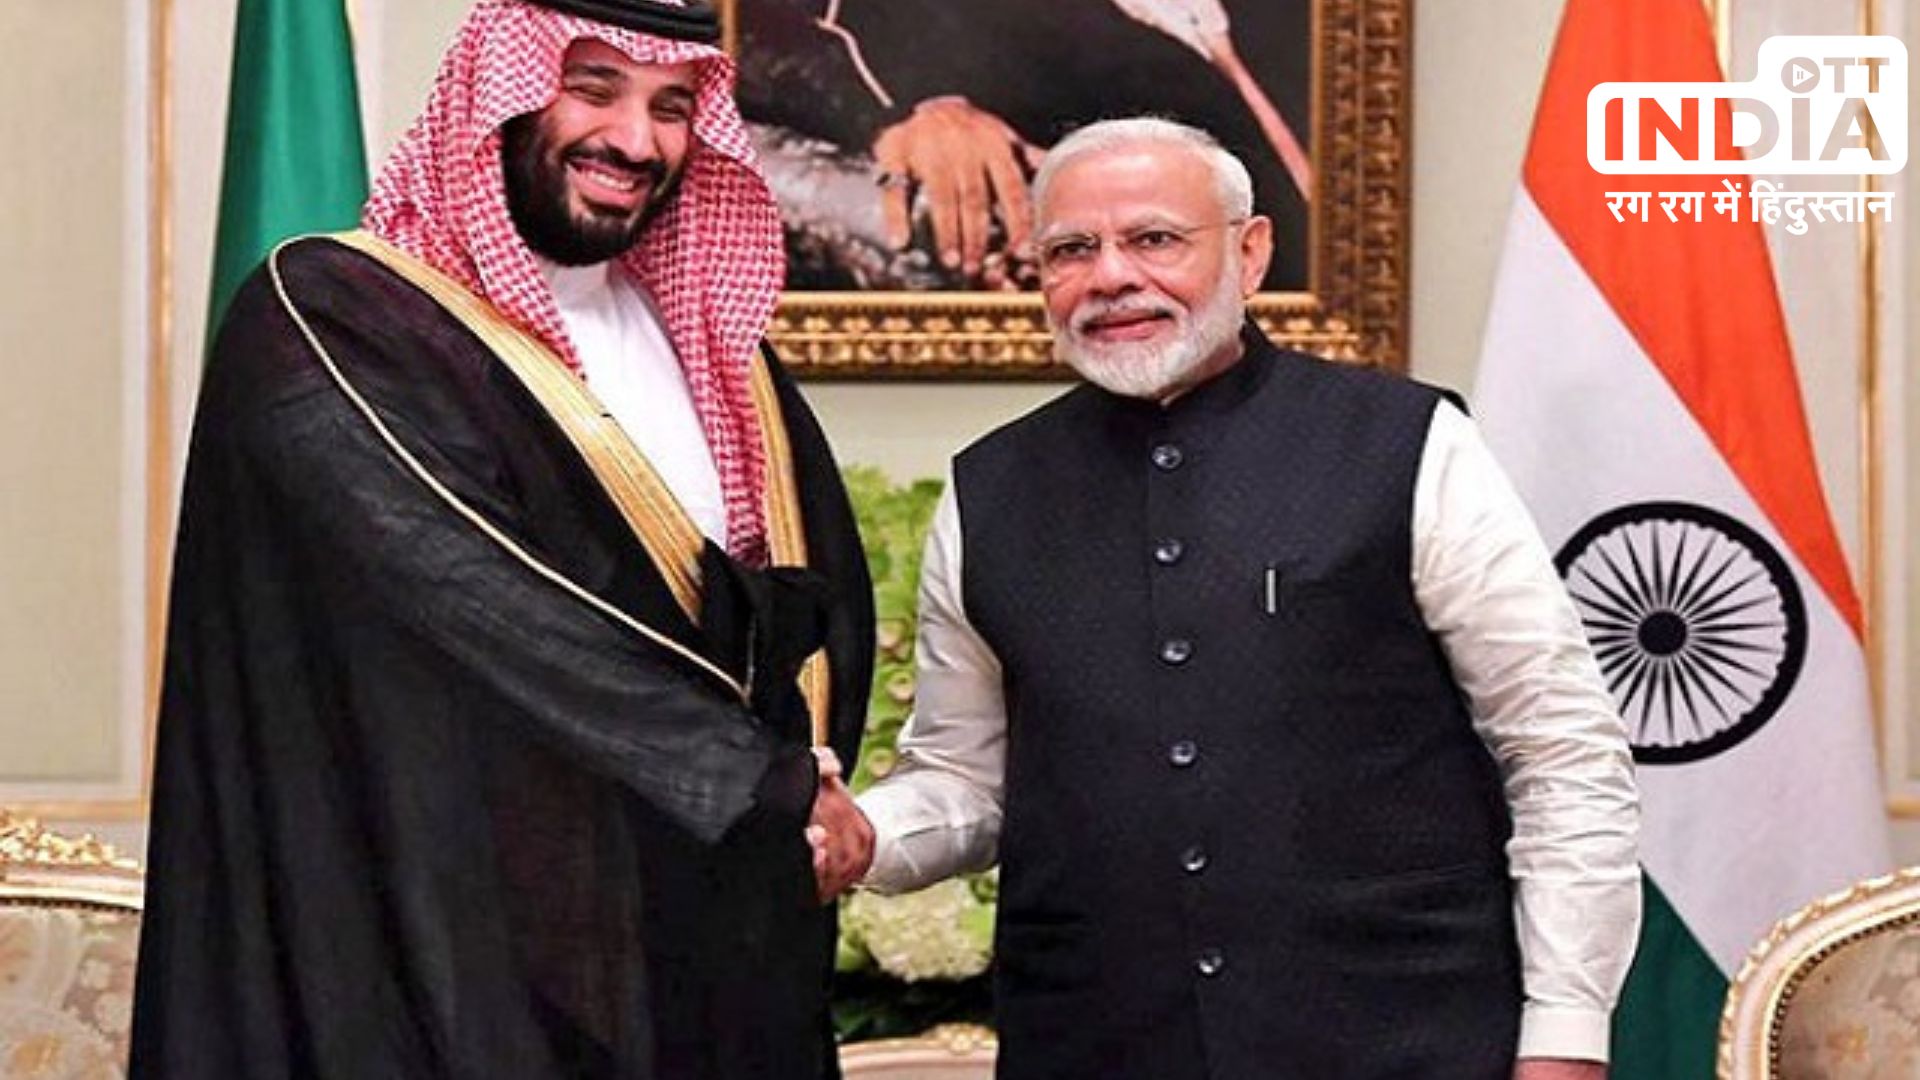 PM Modi with Crown Prince : सऊदी क्राउन प्रिंस और पीएम मोदी की मुलाकात, रक्षा संबंधों को मजबूत करने पर हुई चर्चा…